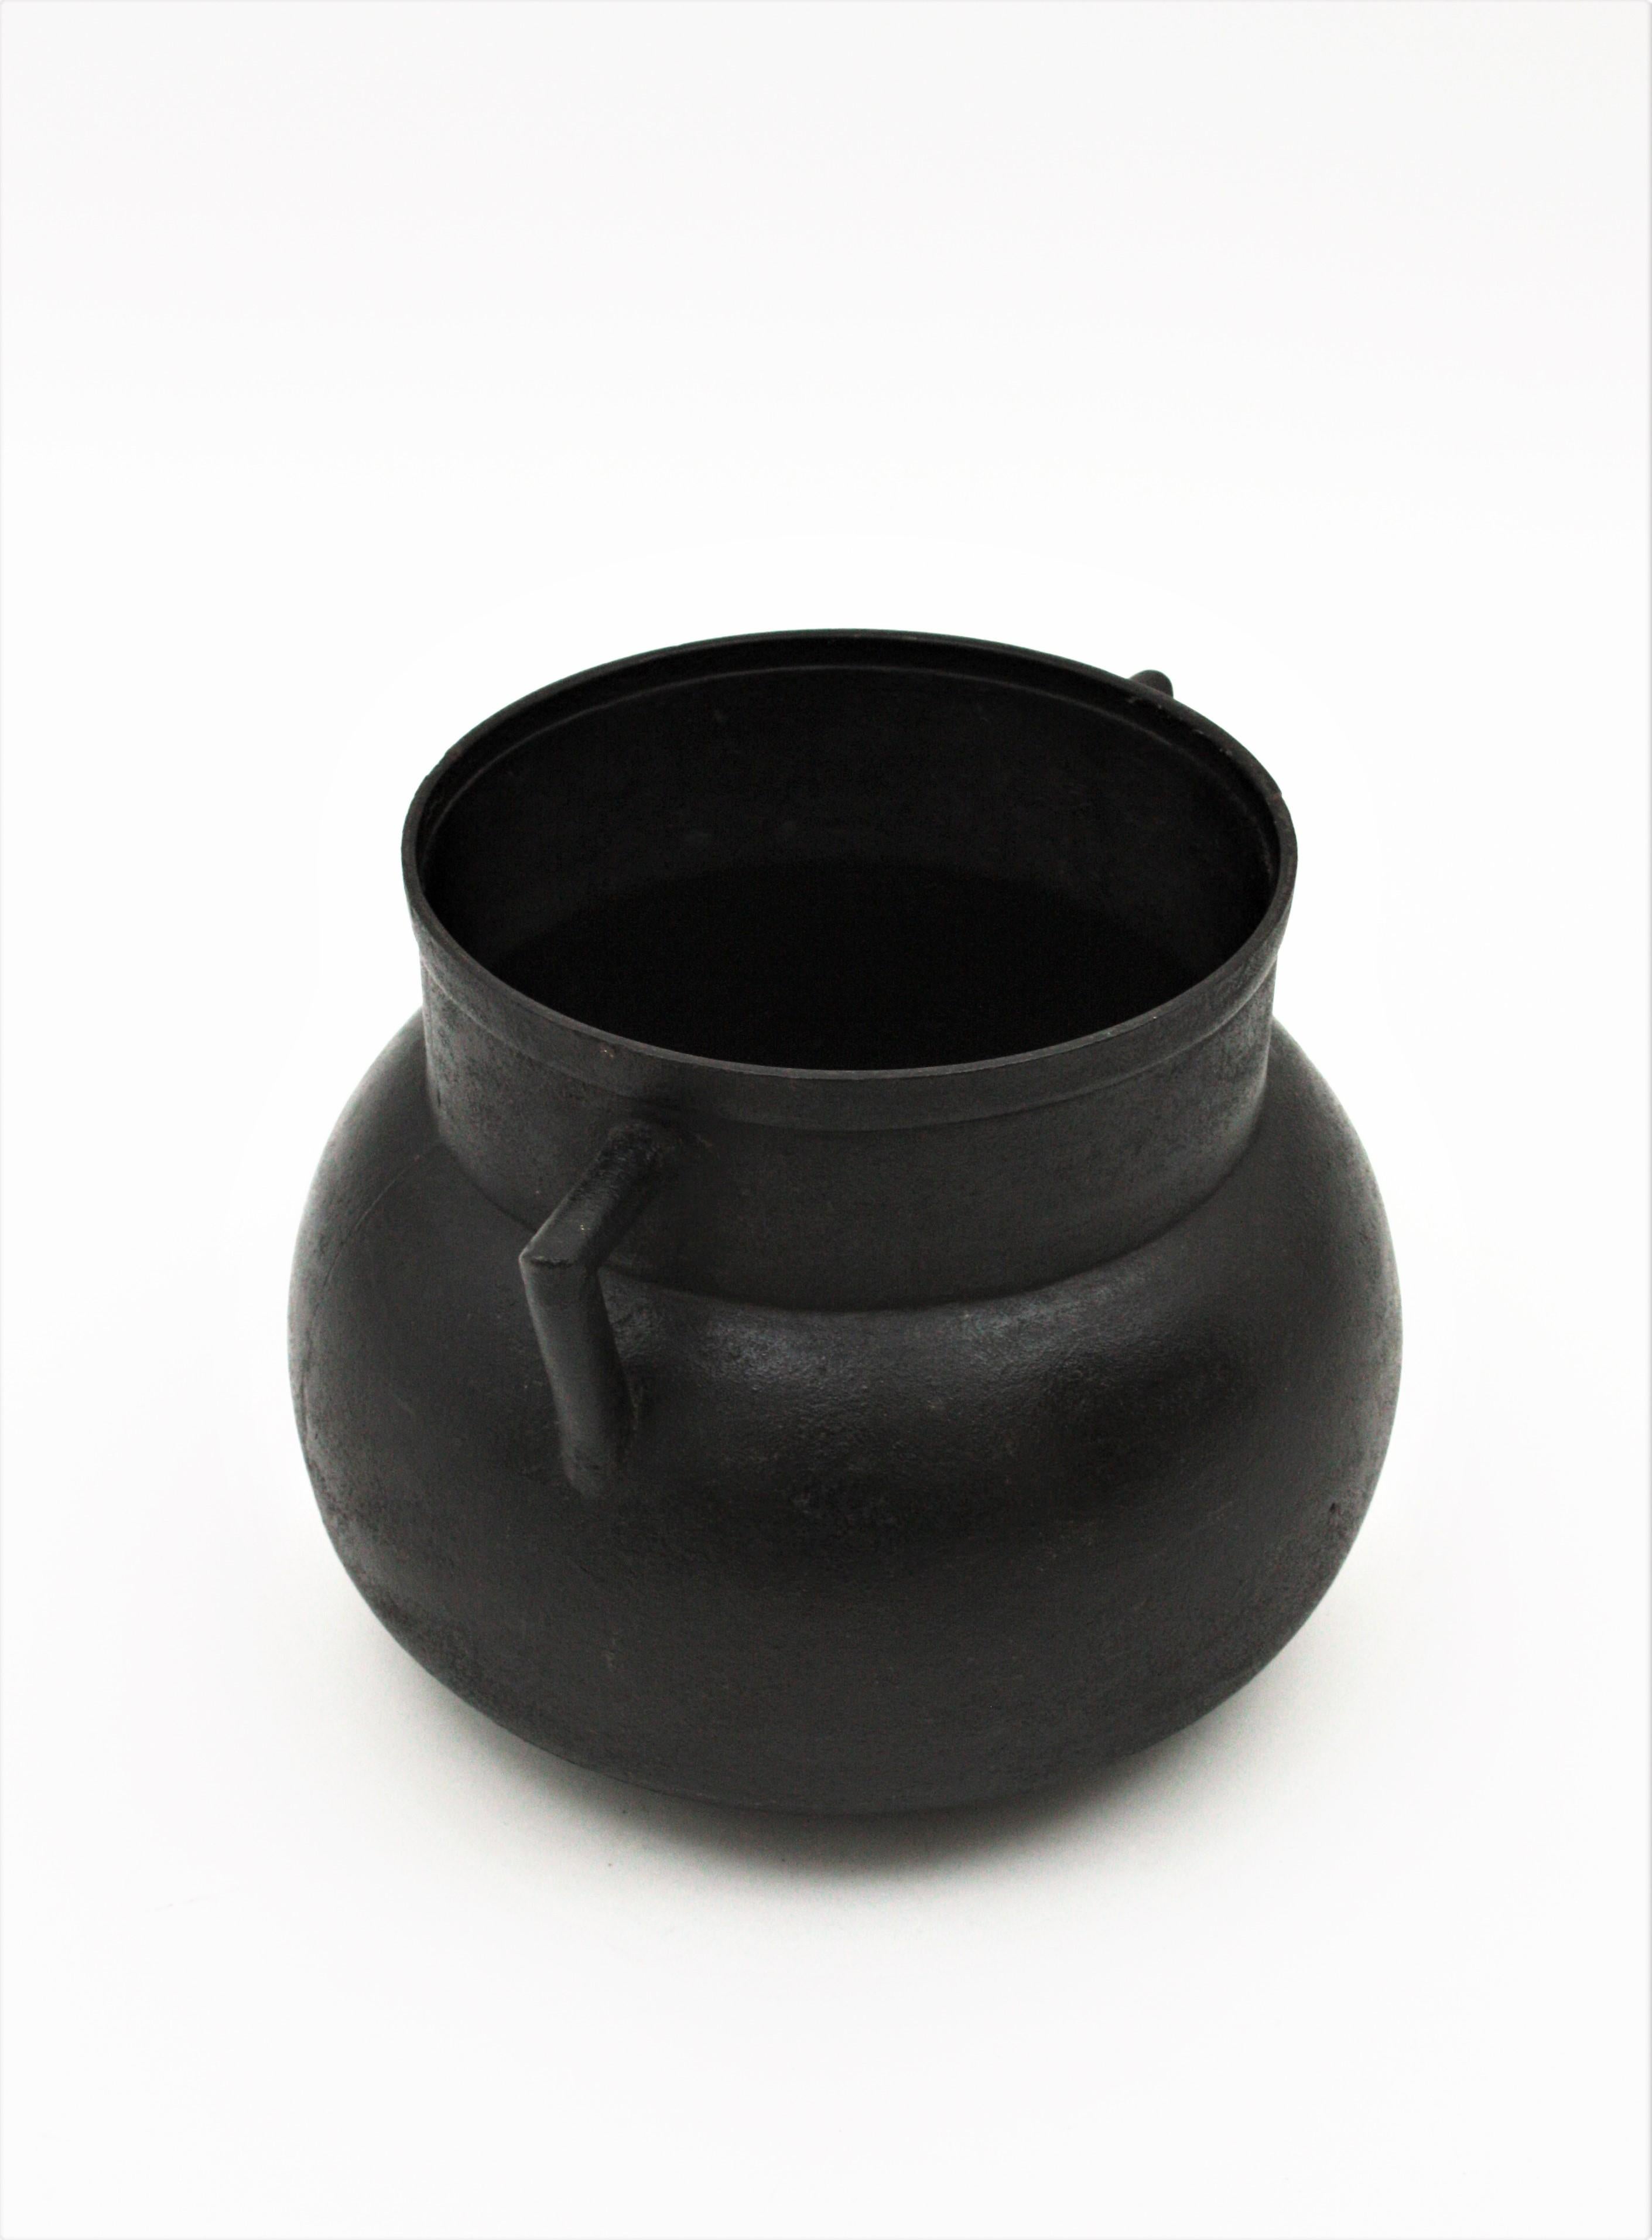 Spanish Cast Iron Cauldron Pot or Vessel For Sale 1